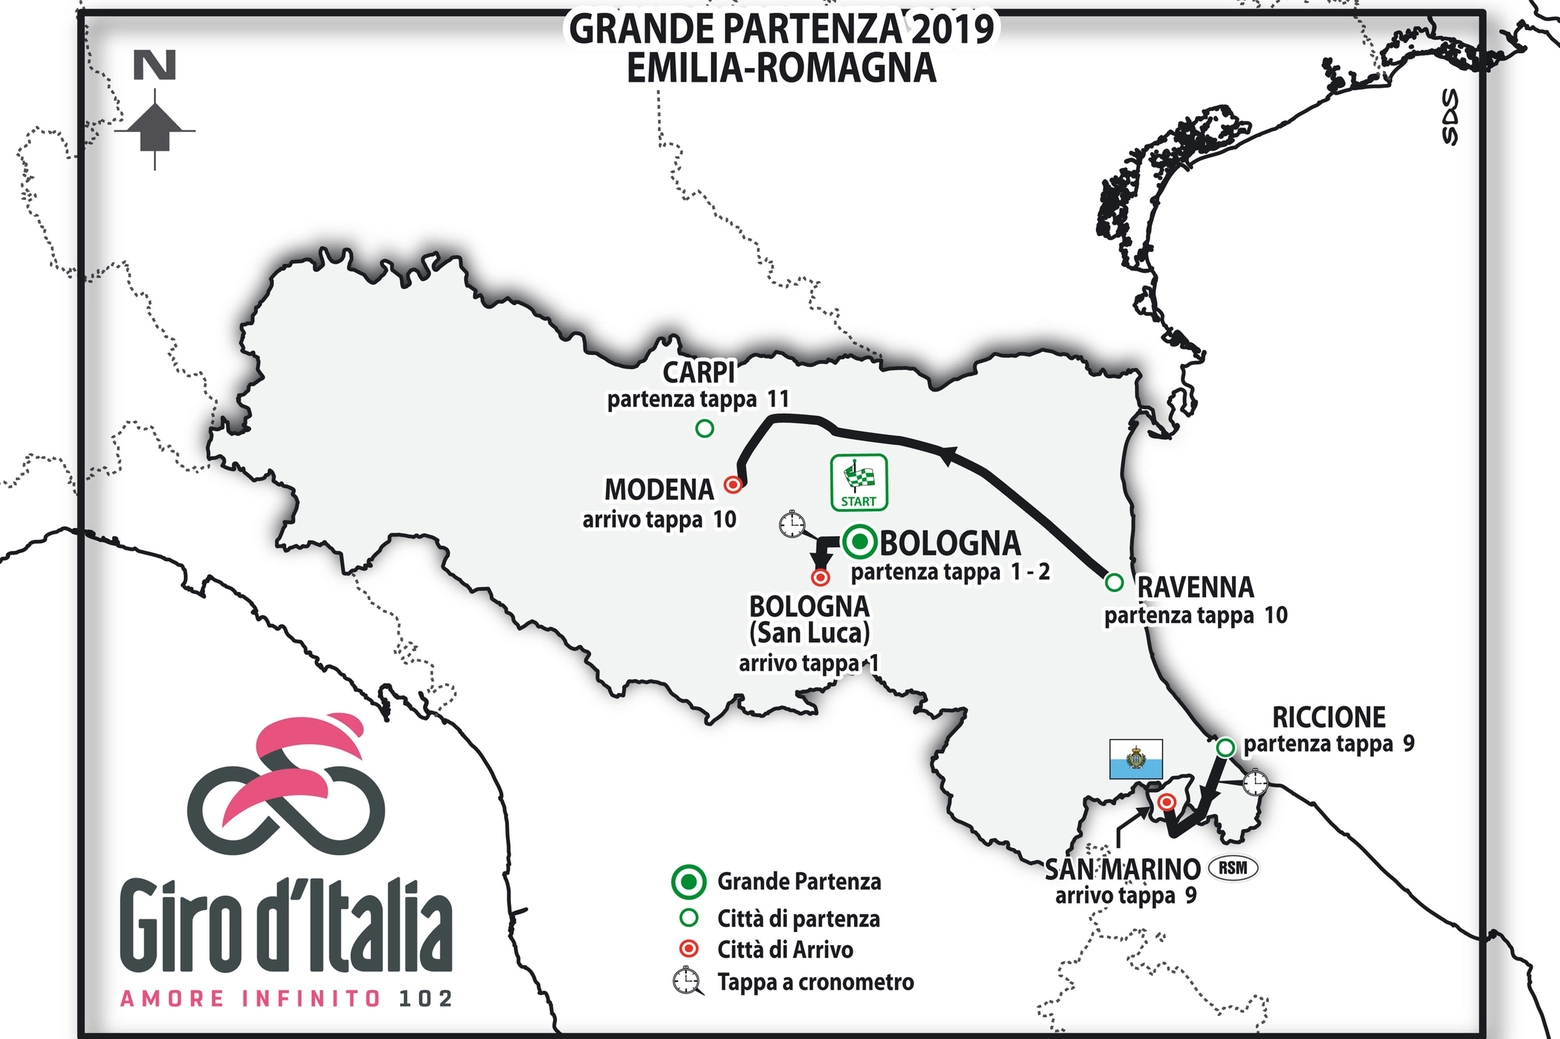 GIRO D’ITALIA 2019: IN EMILIA-ROMAGNA LA GRANDE PARTENZA E ALTRE TAPPE SUL TERRITORIO